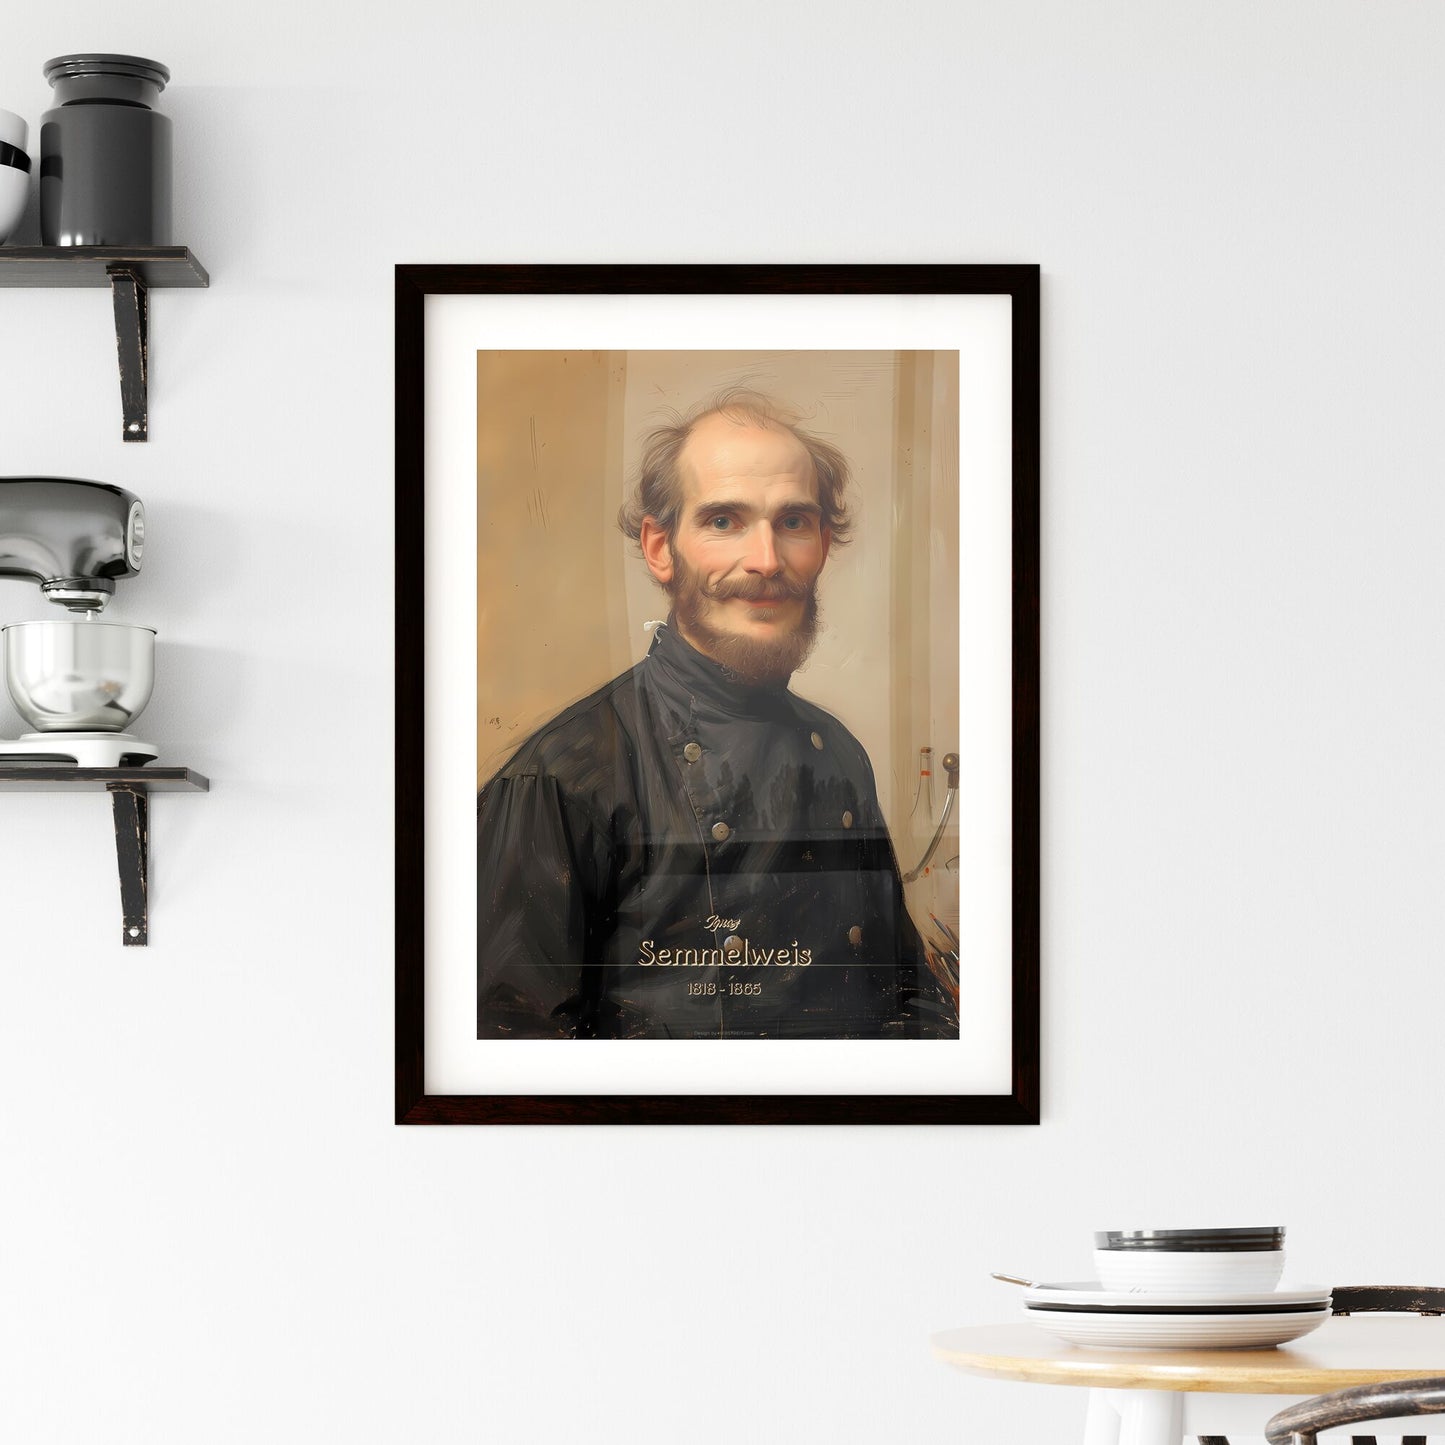 Ignaz, Semmelweis, 1818 - 1865, A Poster of a man in a black shirt Default Title